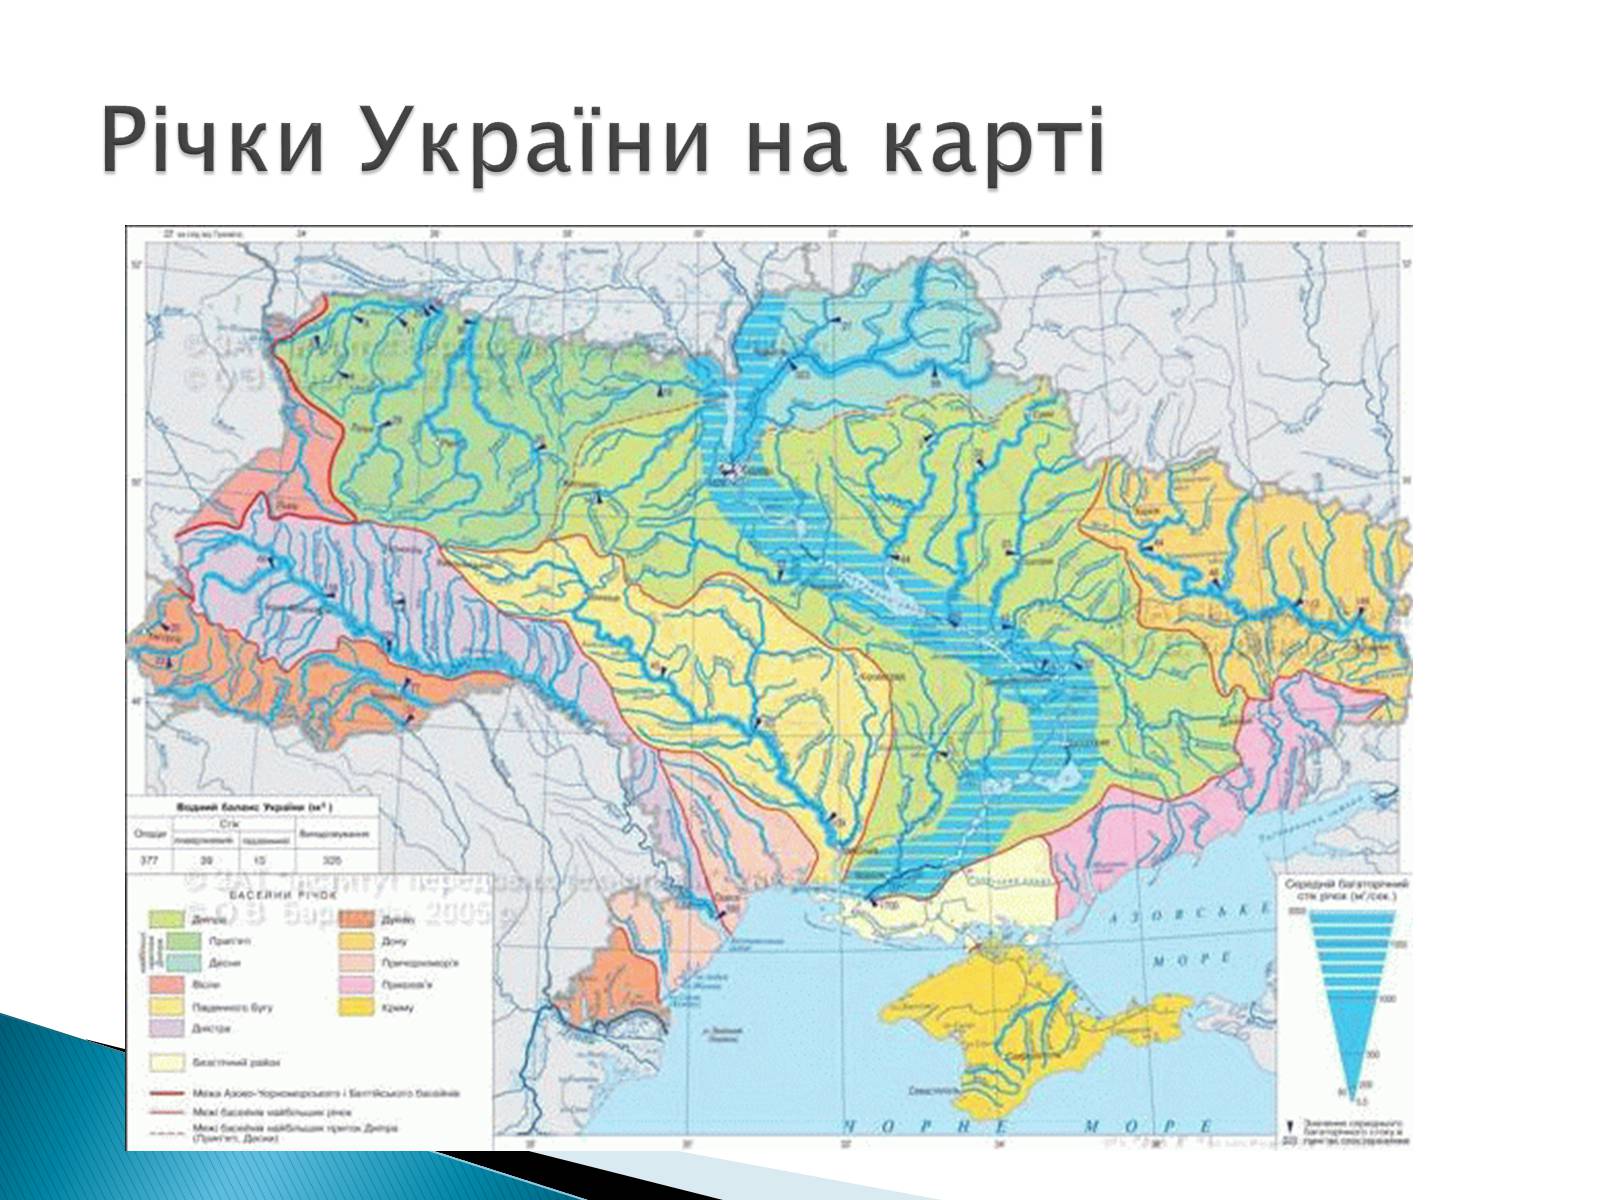 Река синие воды на карте. Крупные реки Украины на карте. Карта Украины реки Украины с названиями. Реки Украины на карте Украины. Географическая карта Украины с реками.